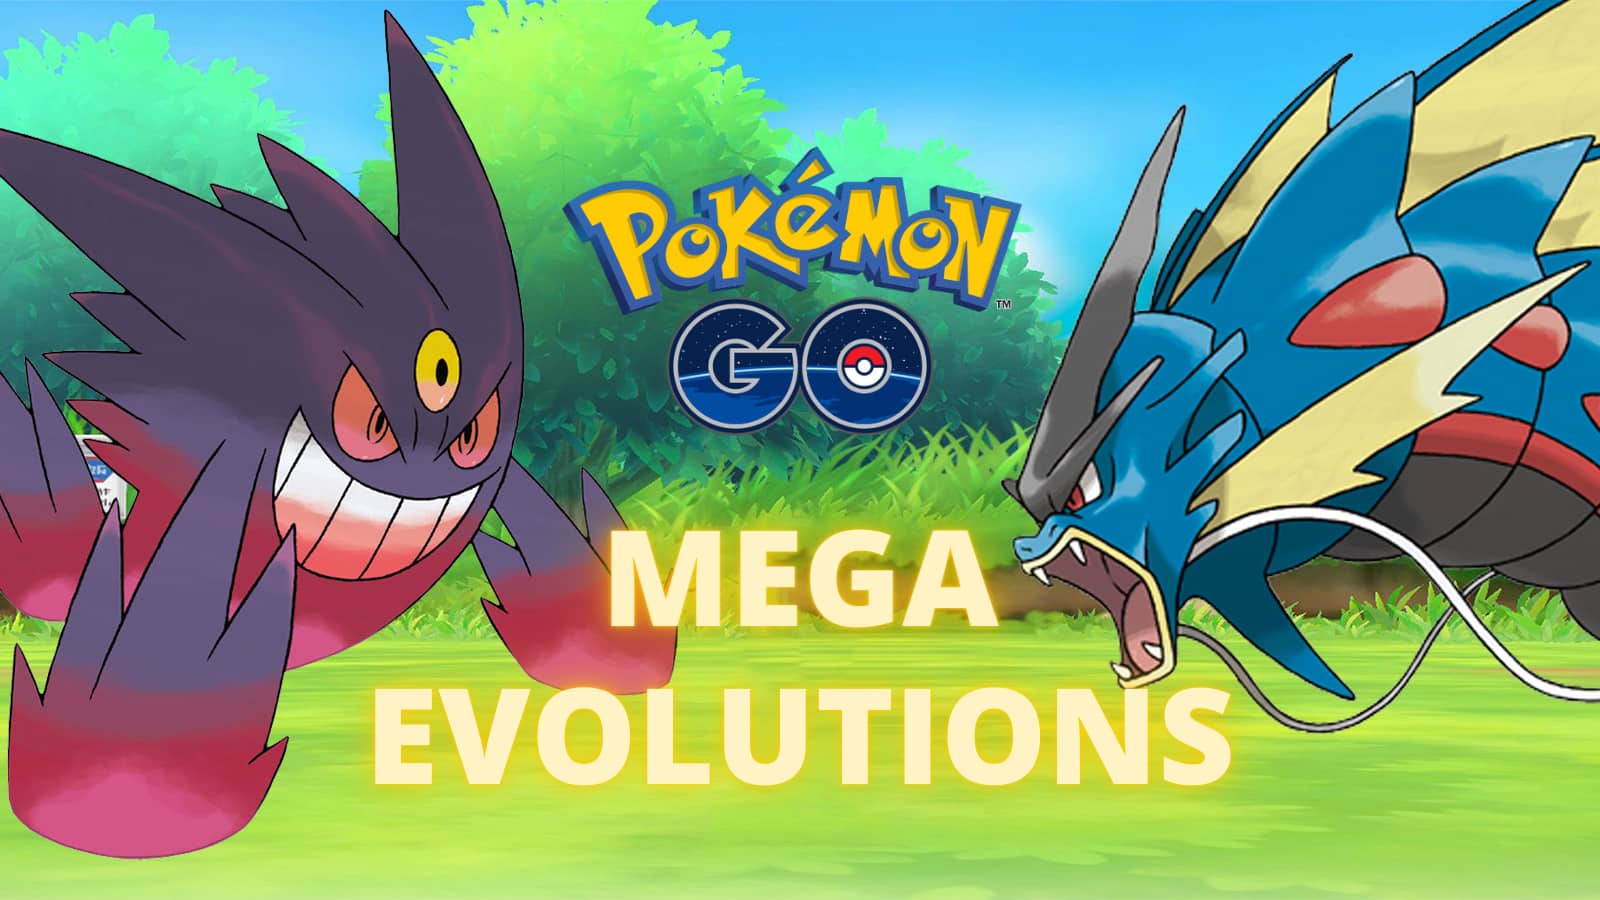 Here's how Mega Evolution works in Pokémon Go